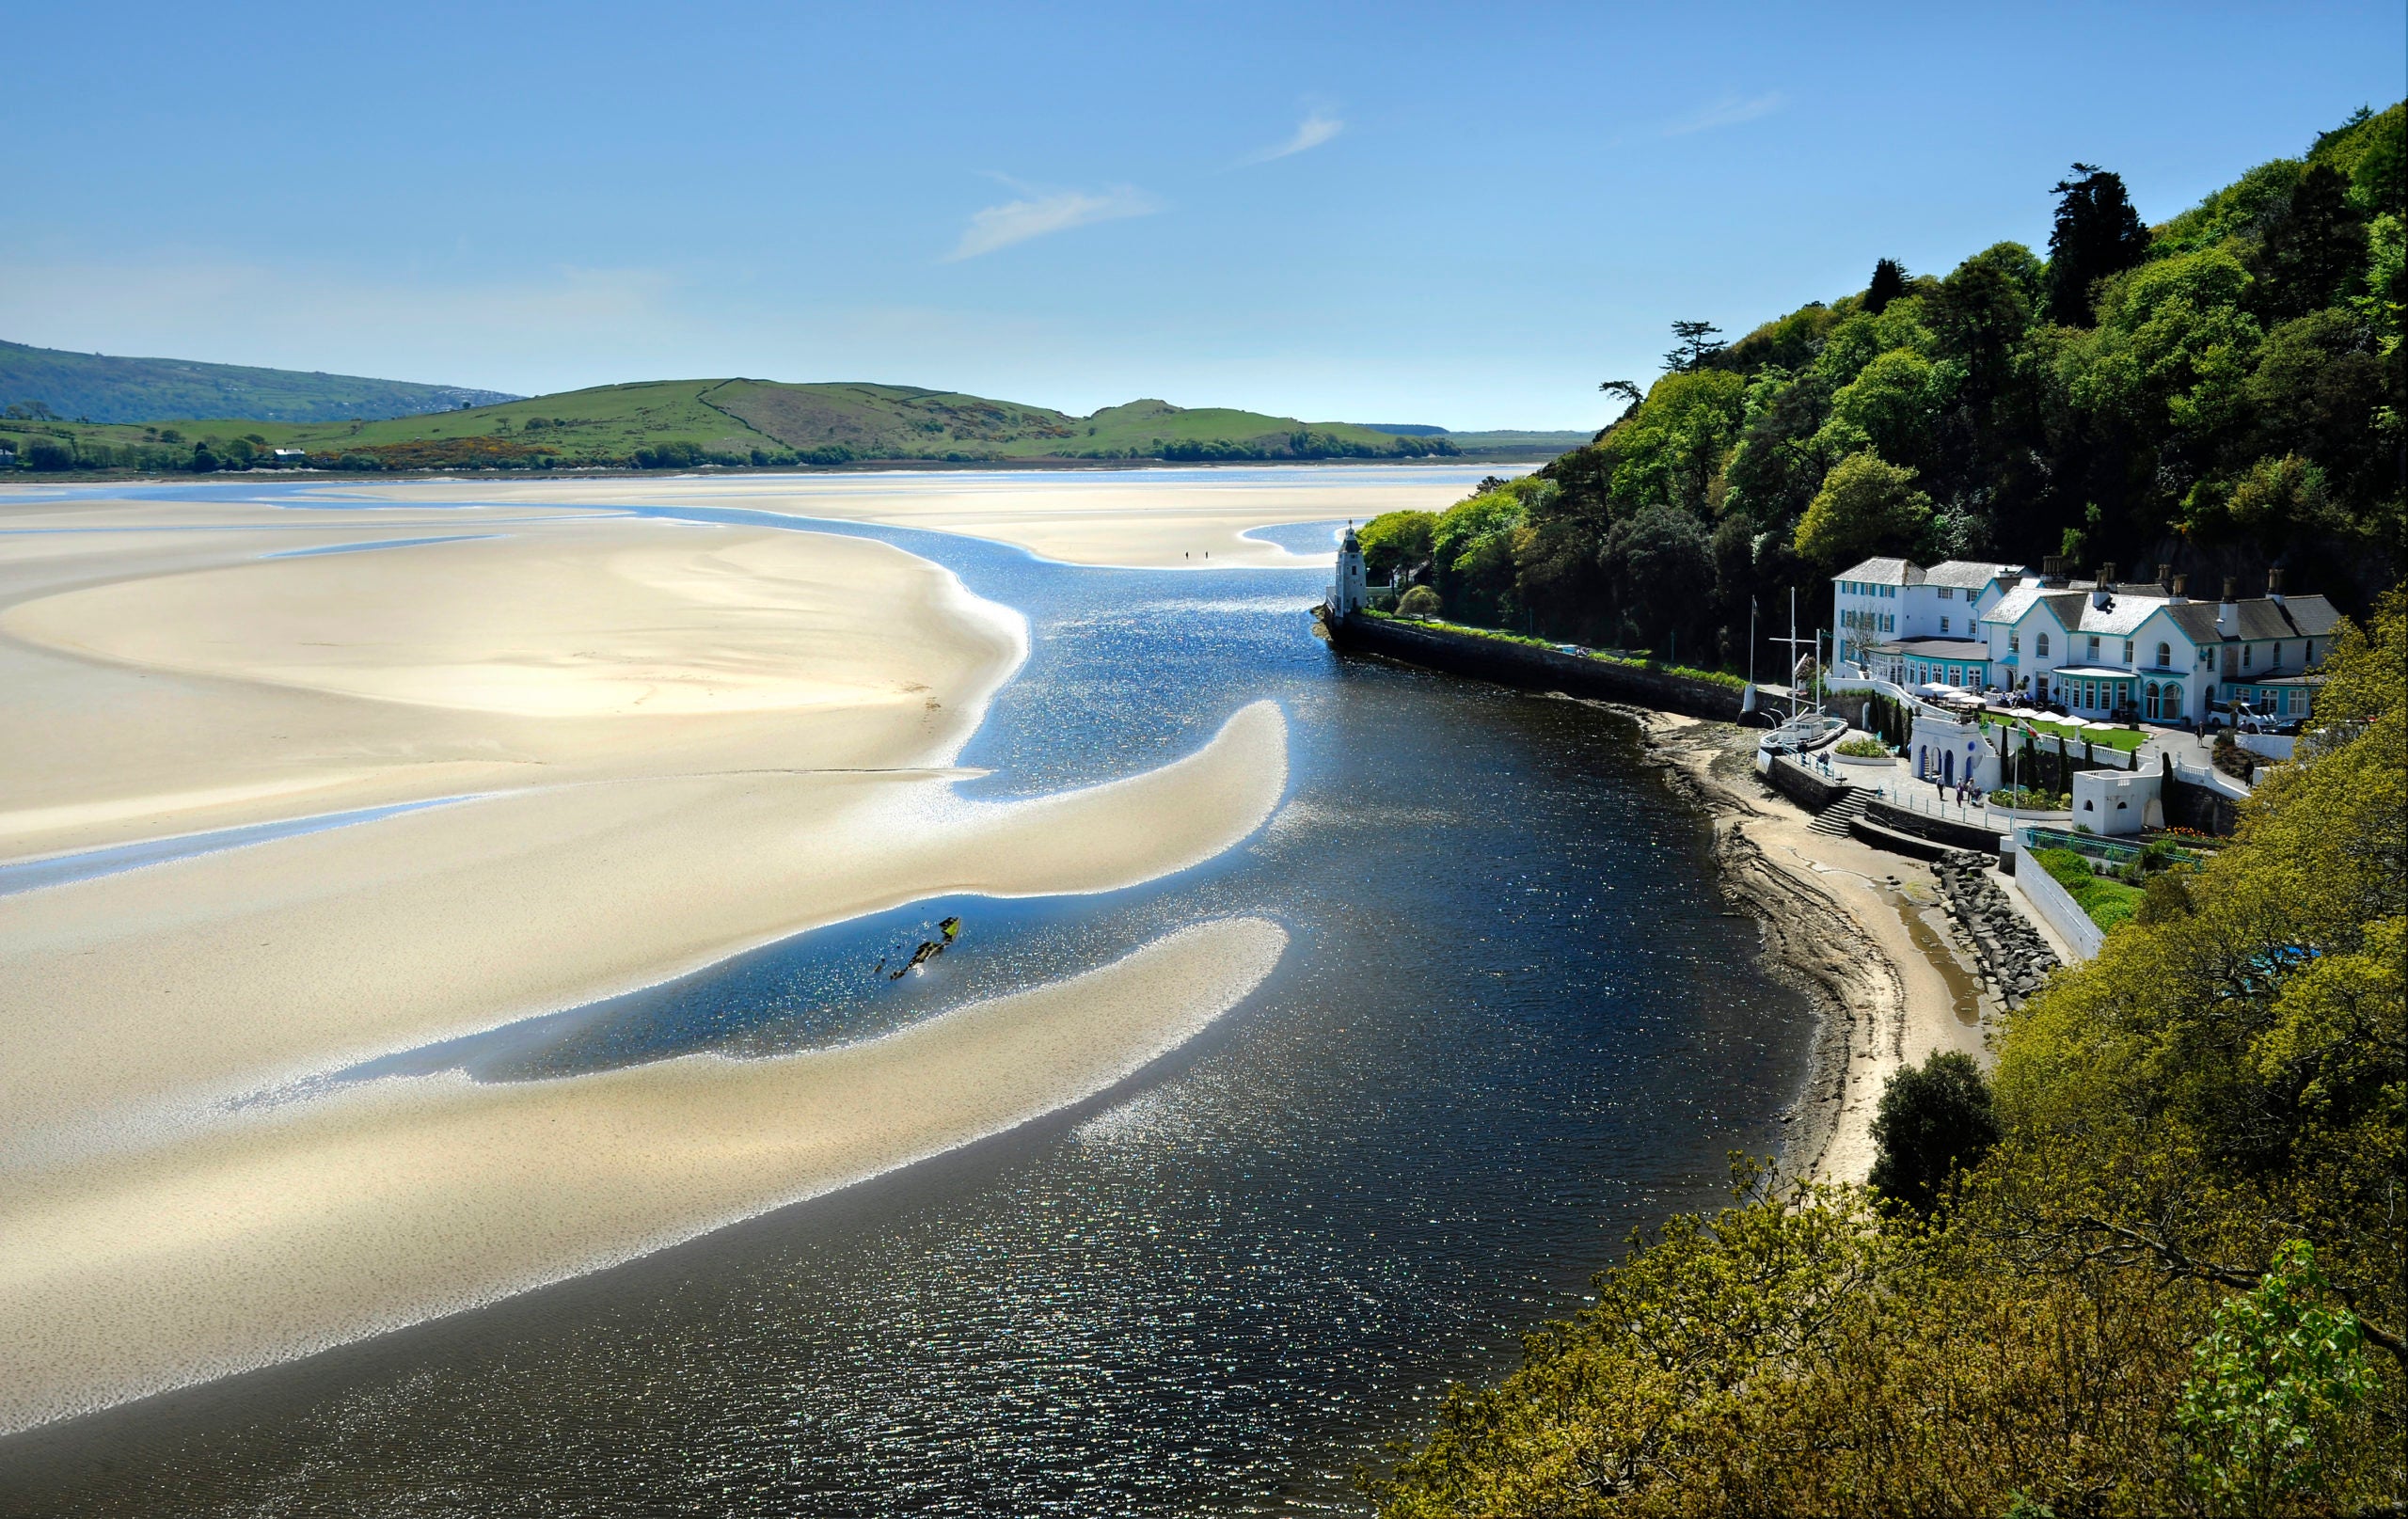 Hotel Portmeirion overlooks the golden sands of the Dwyryd estuary